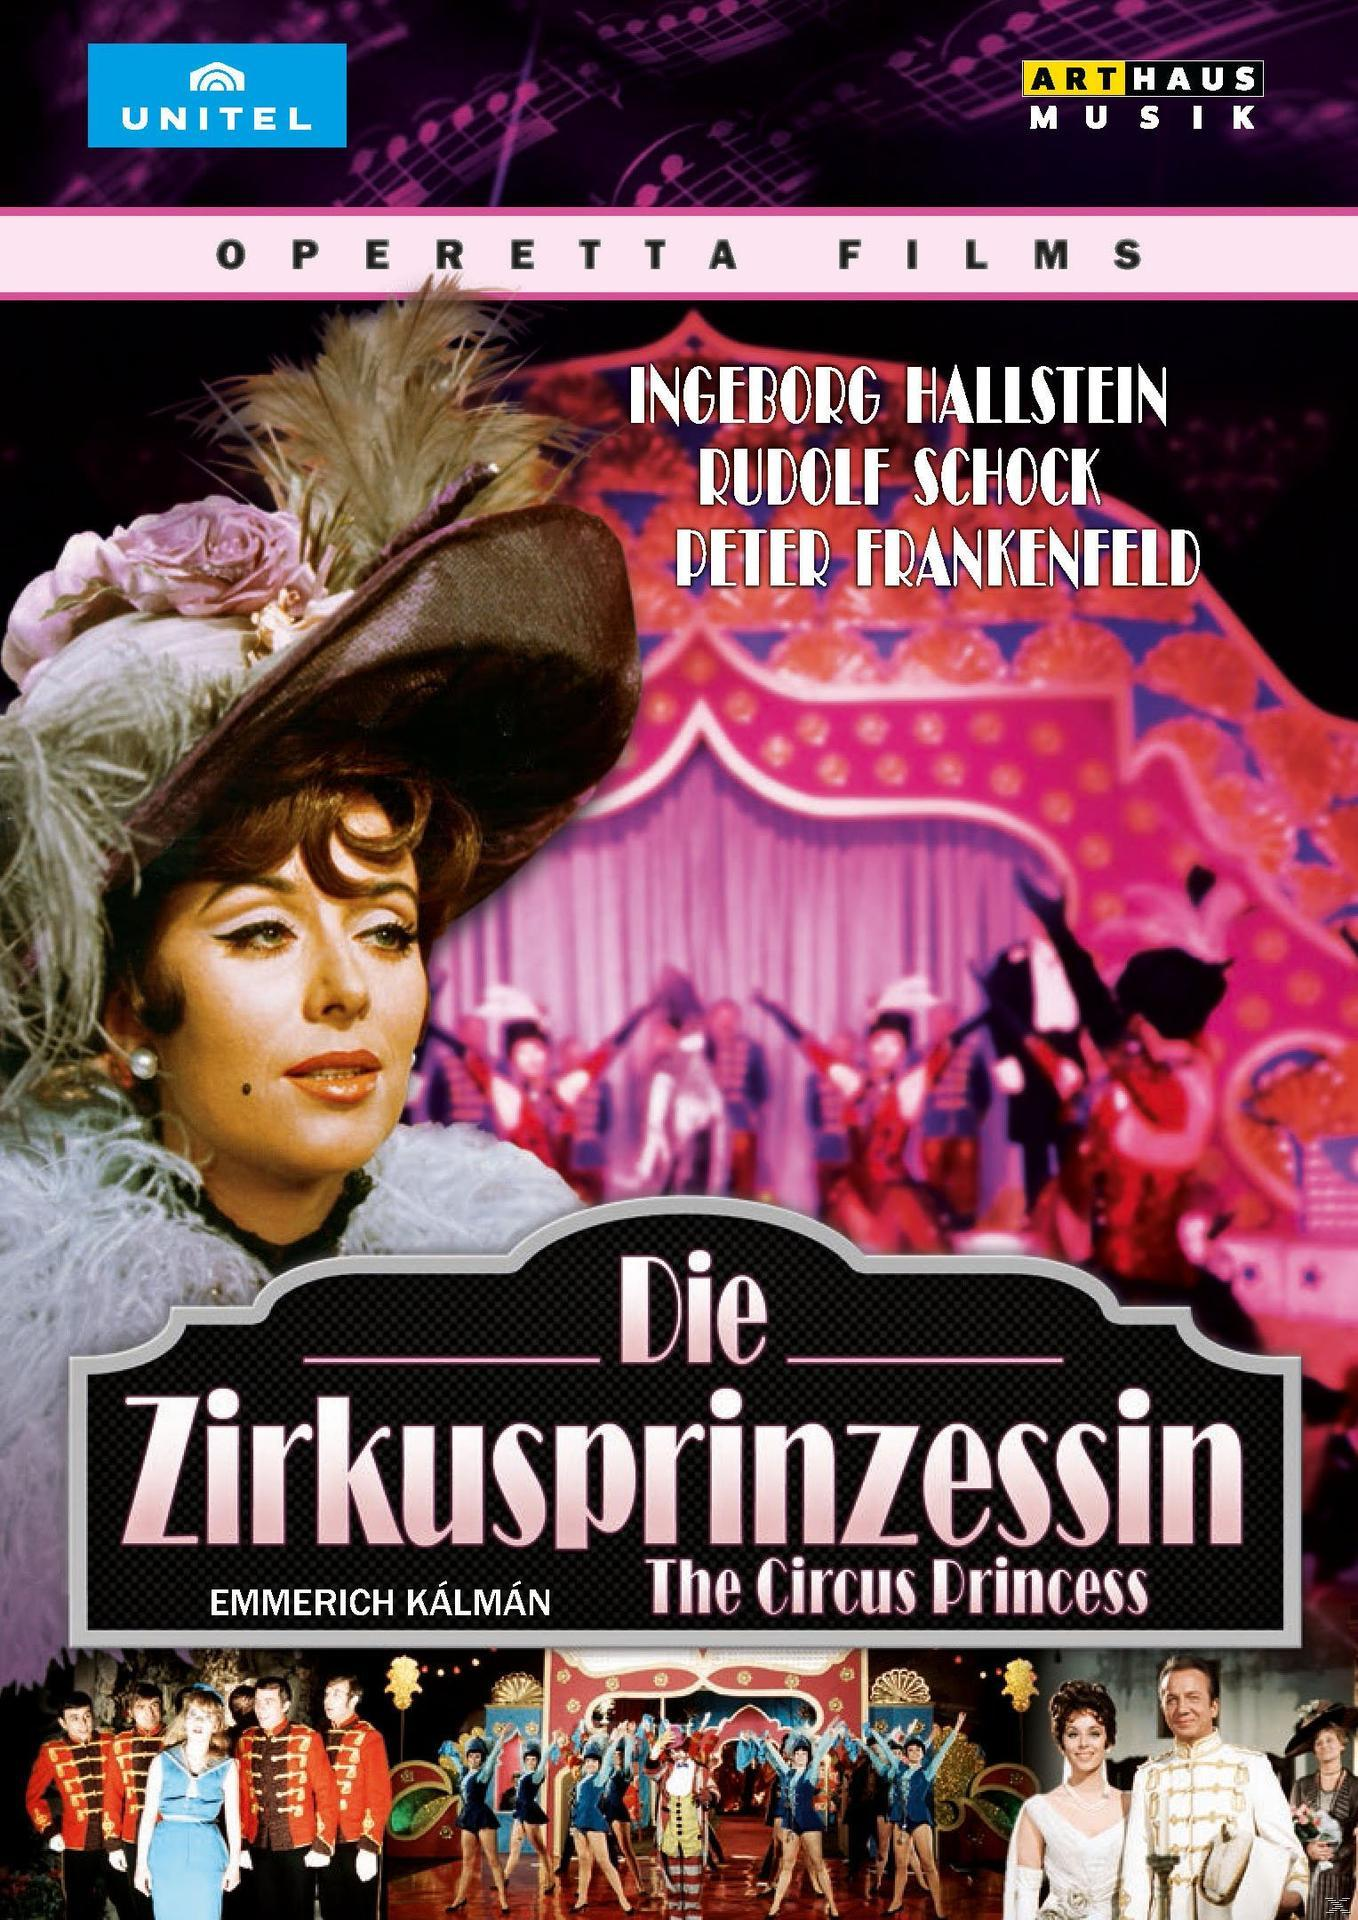 Ingeborg Hallenstein, Rudolf (DVD) - - Die Schock Zirkusprinzessin